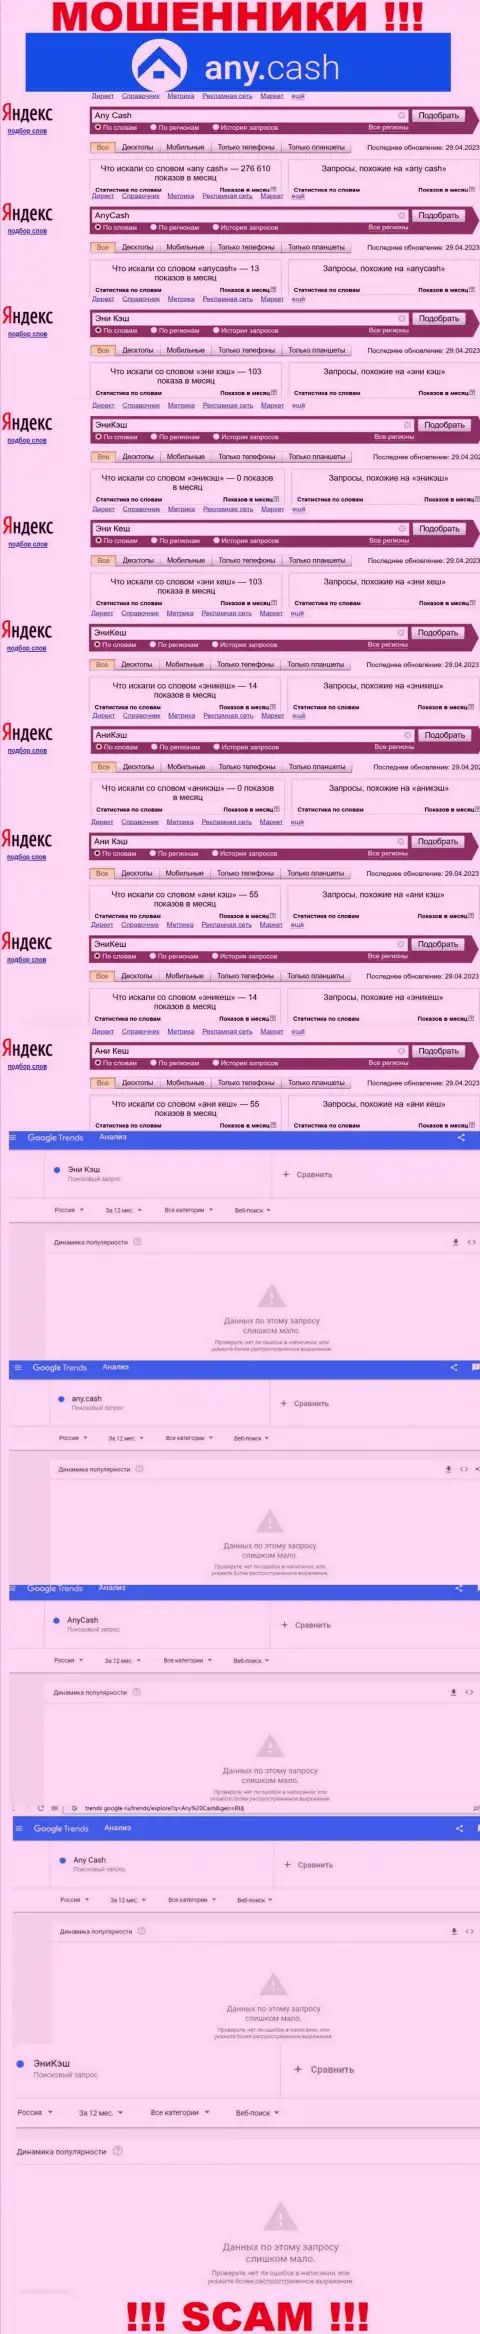 Скриншот итога поисковых запросов по жульнической конторе Эни Кеш